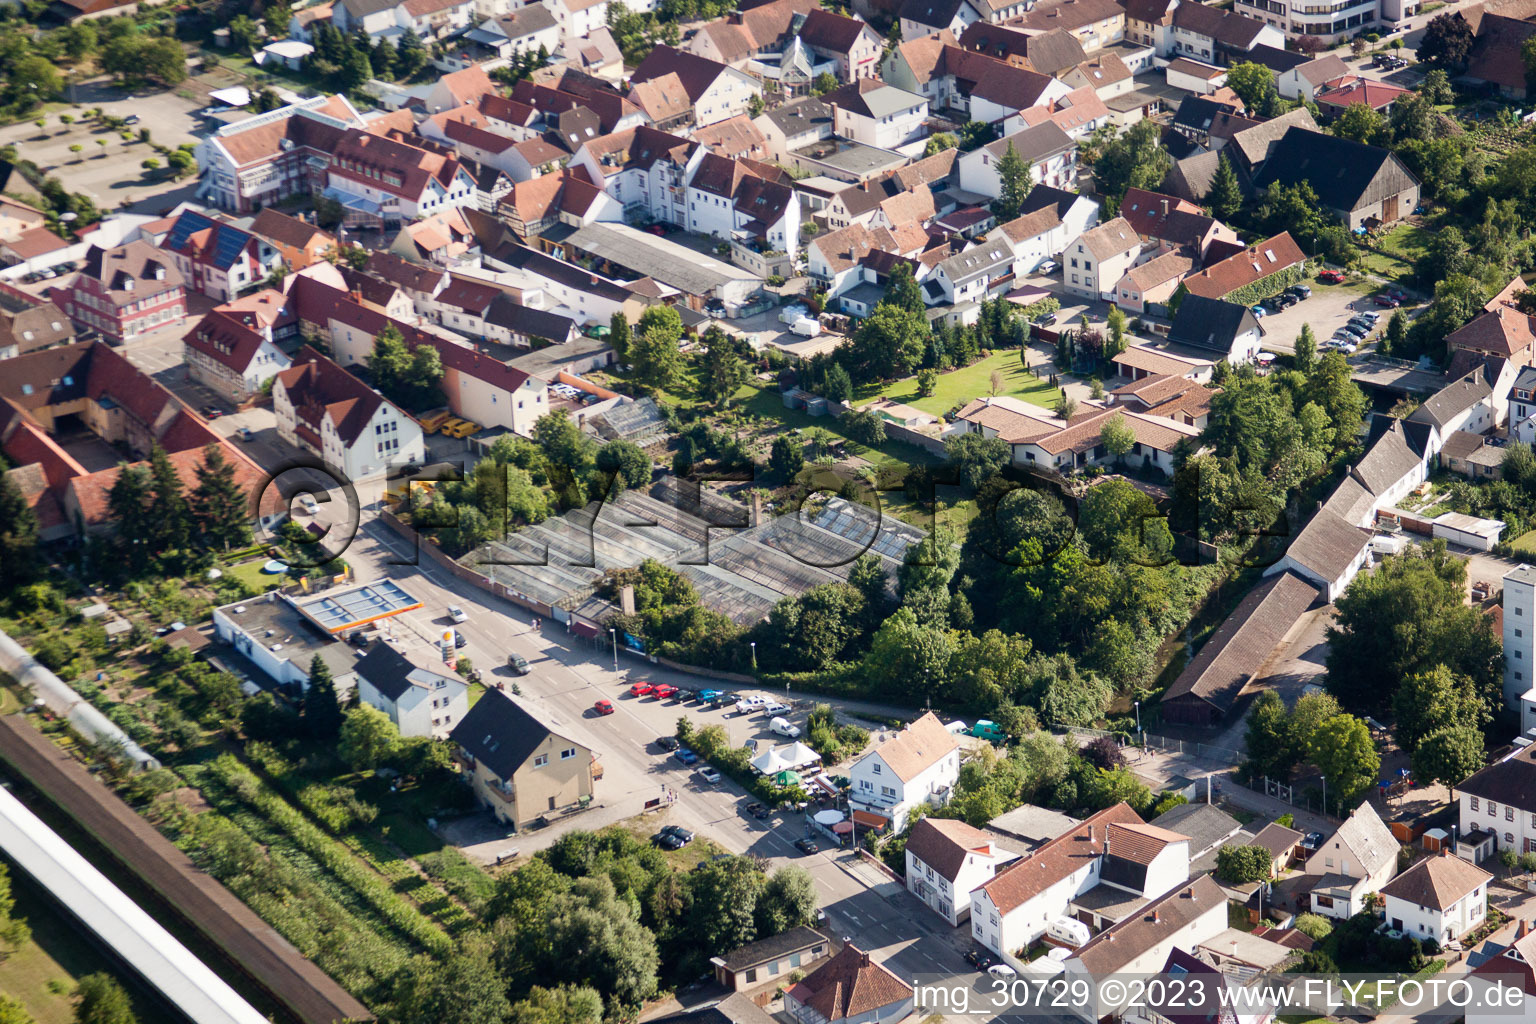 Rülzheim im Bundesland Rheinland-Pfalz, Deutschland von der Drohne aus gesehen